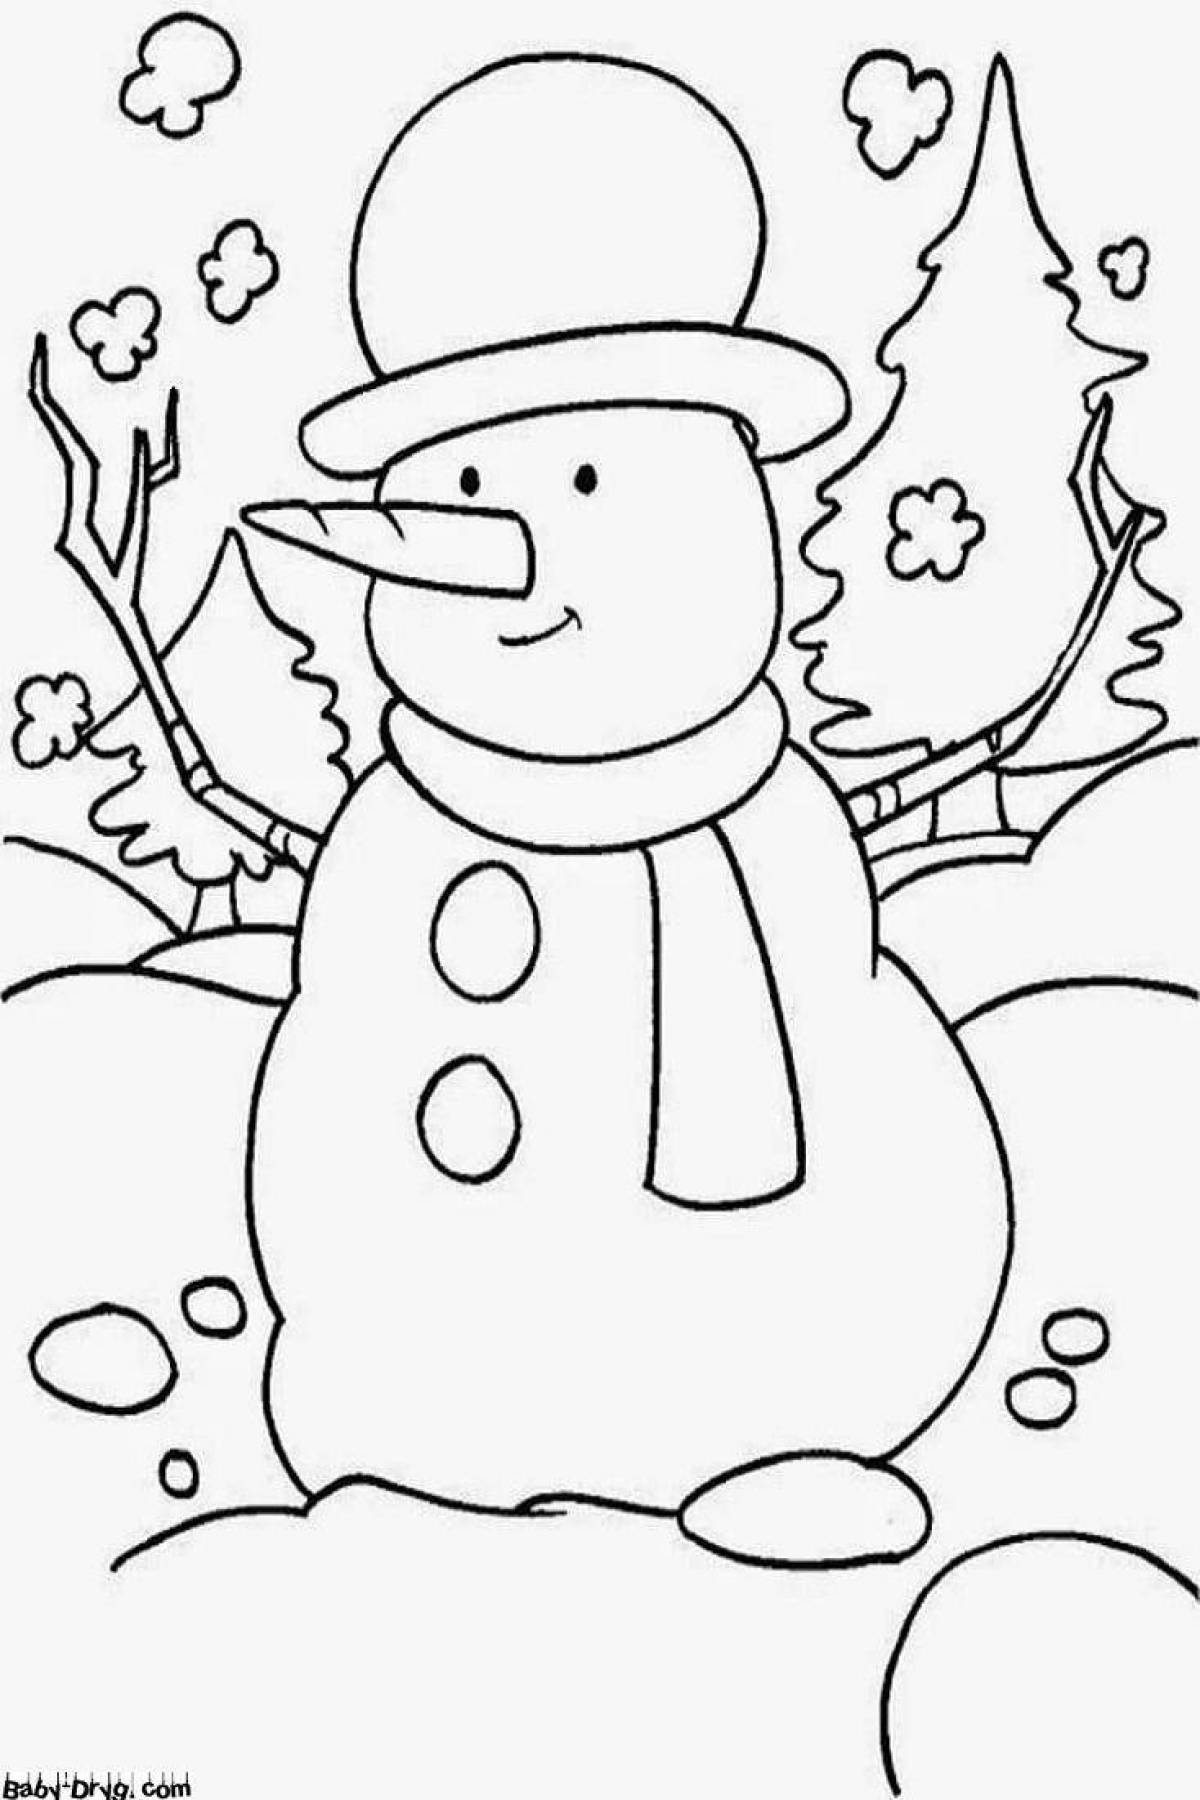 Симпатичная раскраска снеговик для детей